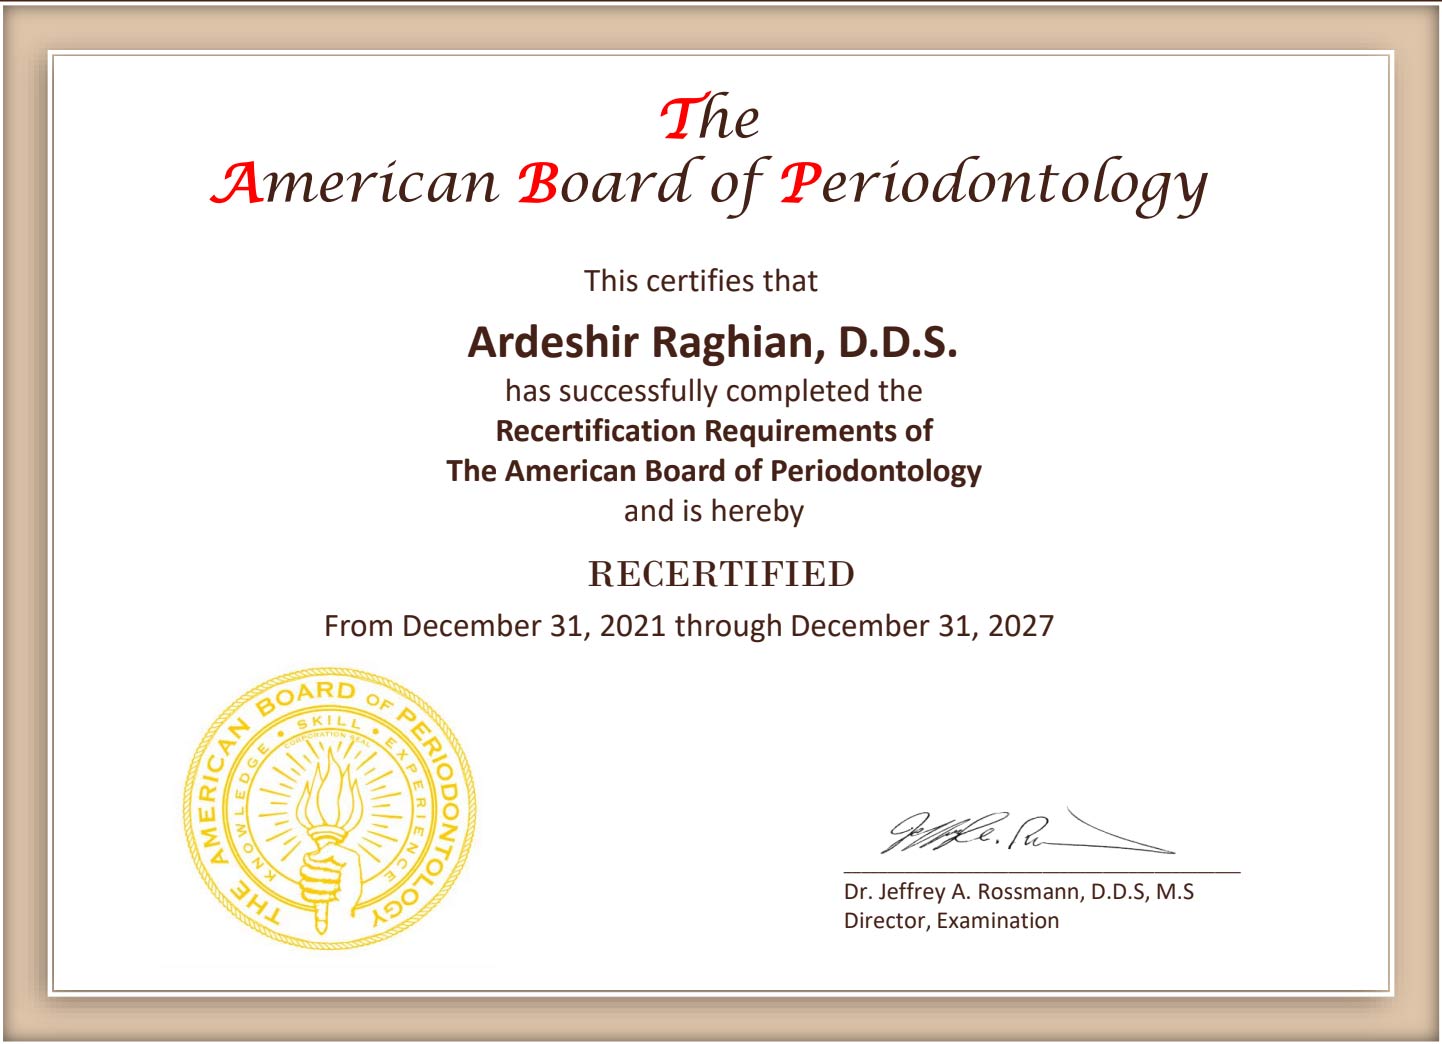 Meet Dr. Ardeshir Raghian in Chicago